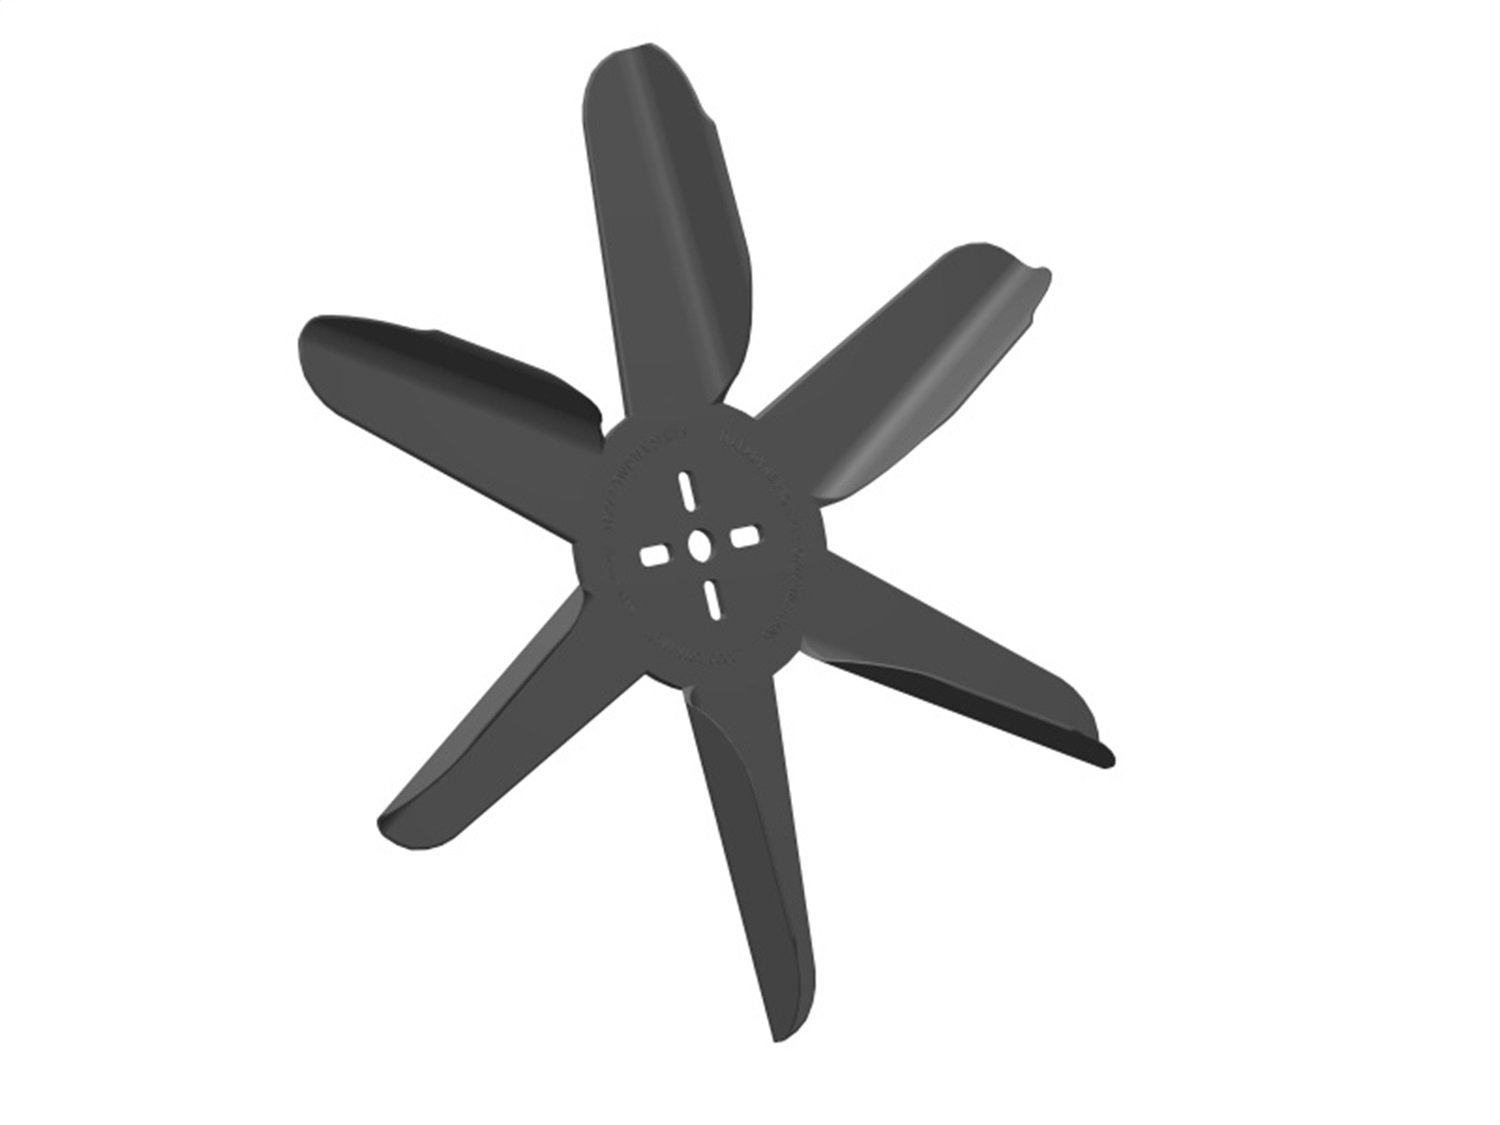 Texas Twister Engine-Driven Flex Fan Blade, Diameter: 18 in.